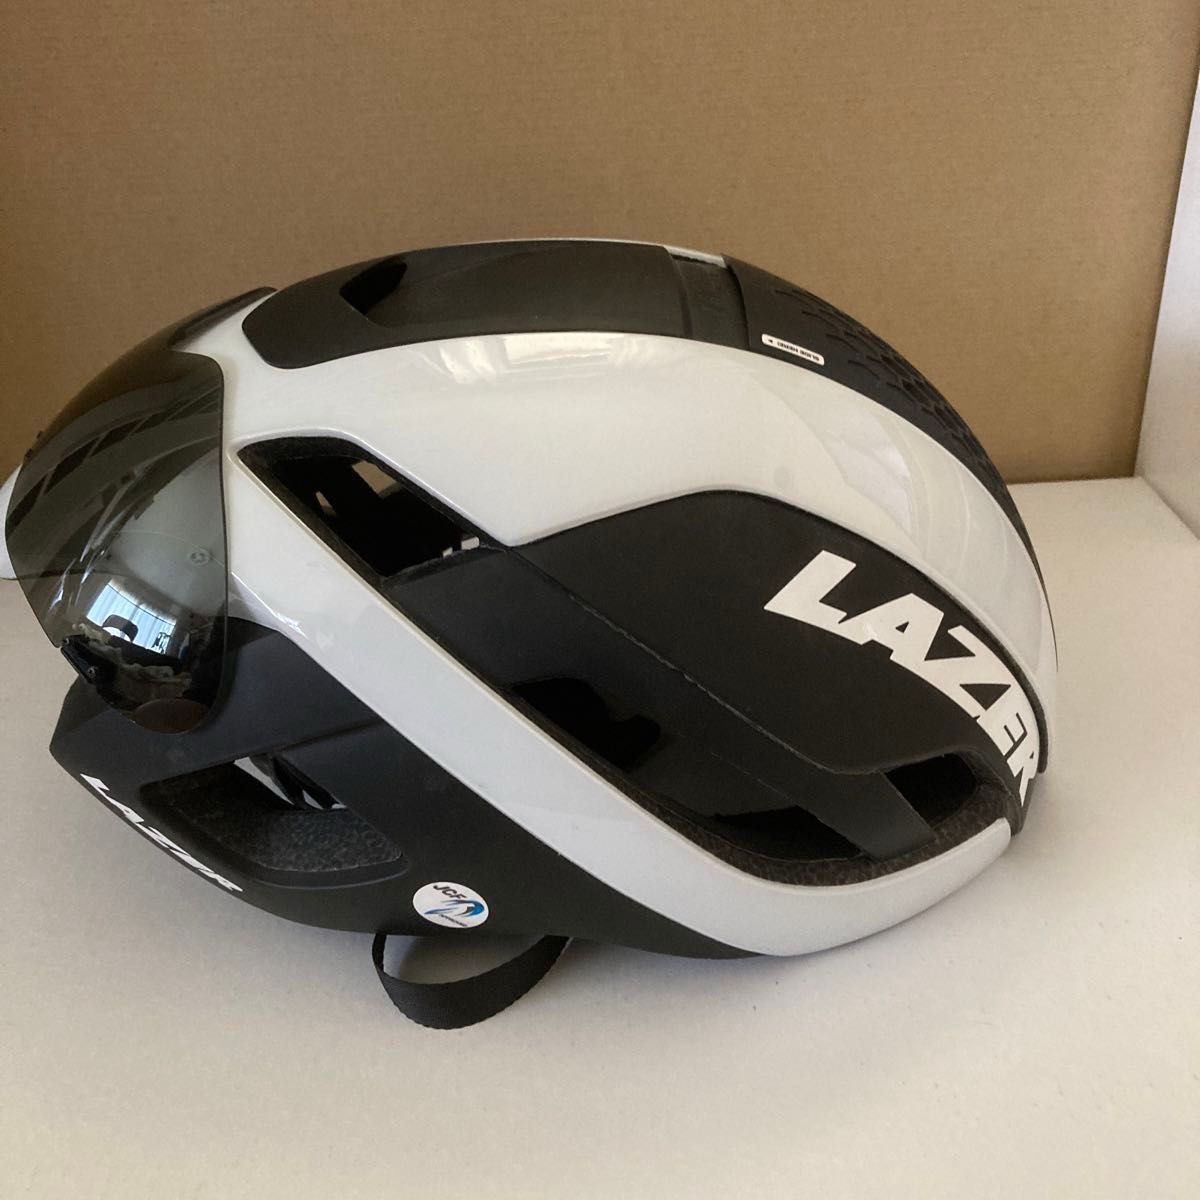 LAZER(レーザー) ヘルメット Bullet 2.0 AF アジアンフィットモデル レンズ・LEDテールライト付き